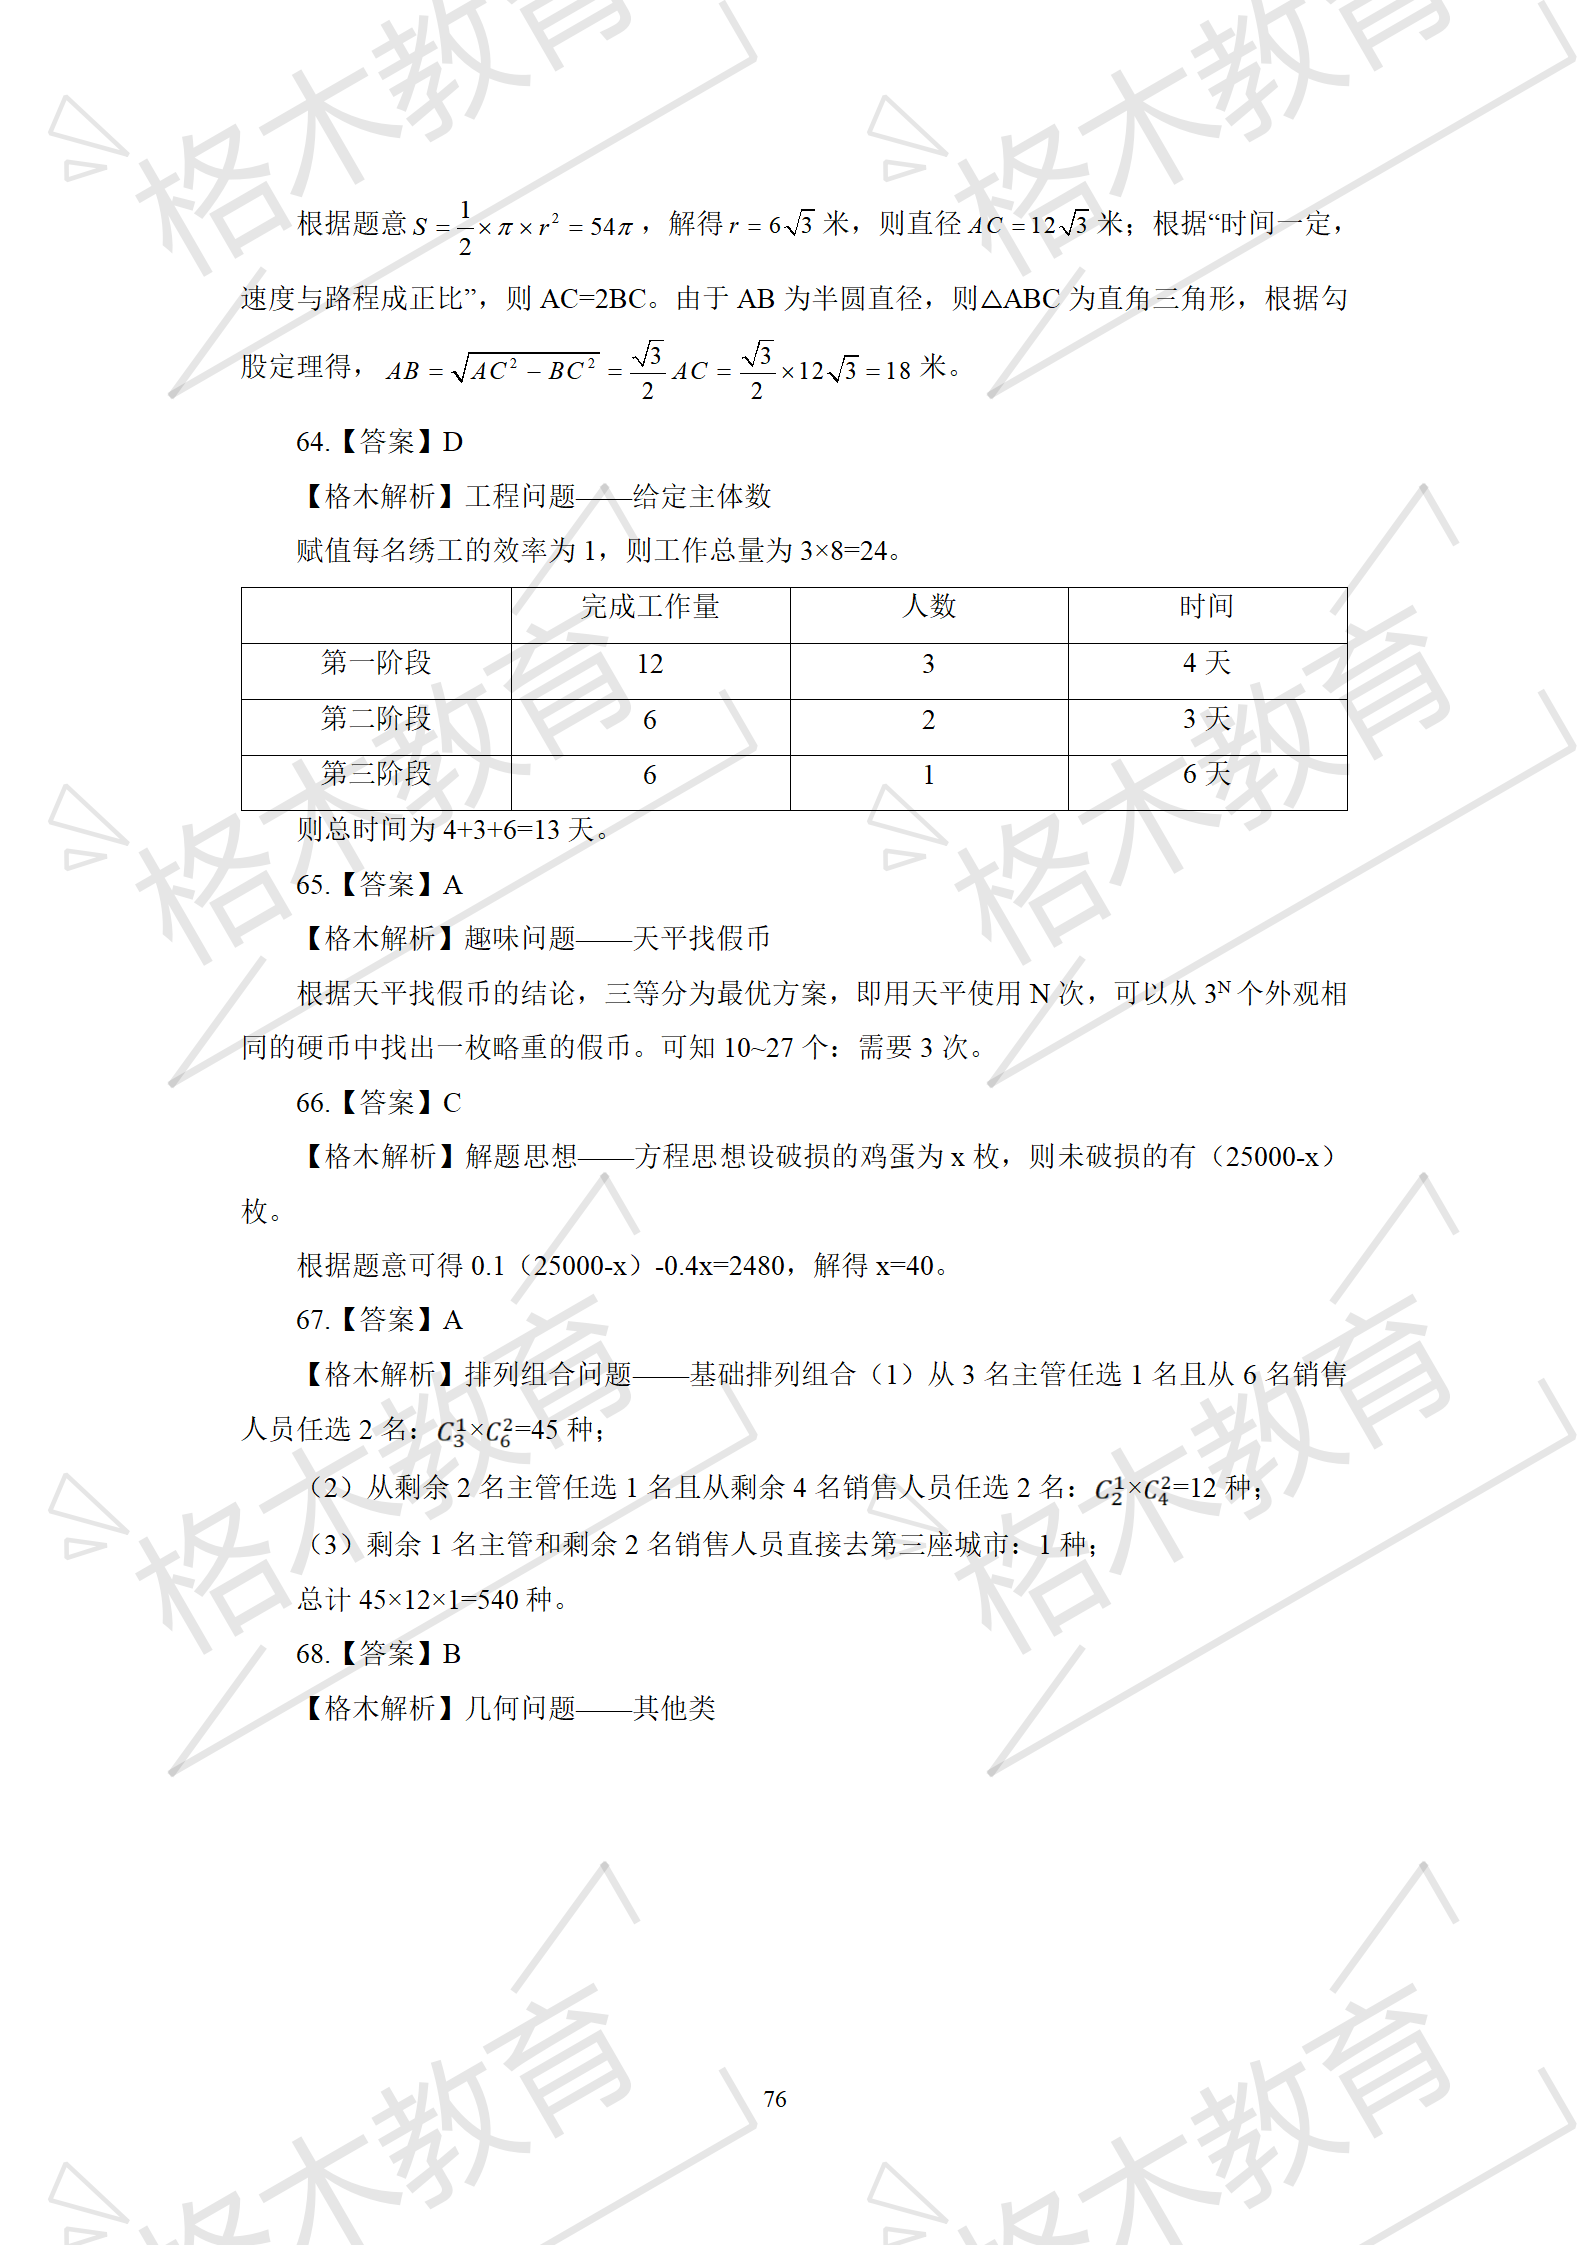 【数量+洗解析】督学-解析-李恩菊部分+0131(1)_78.png